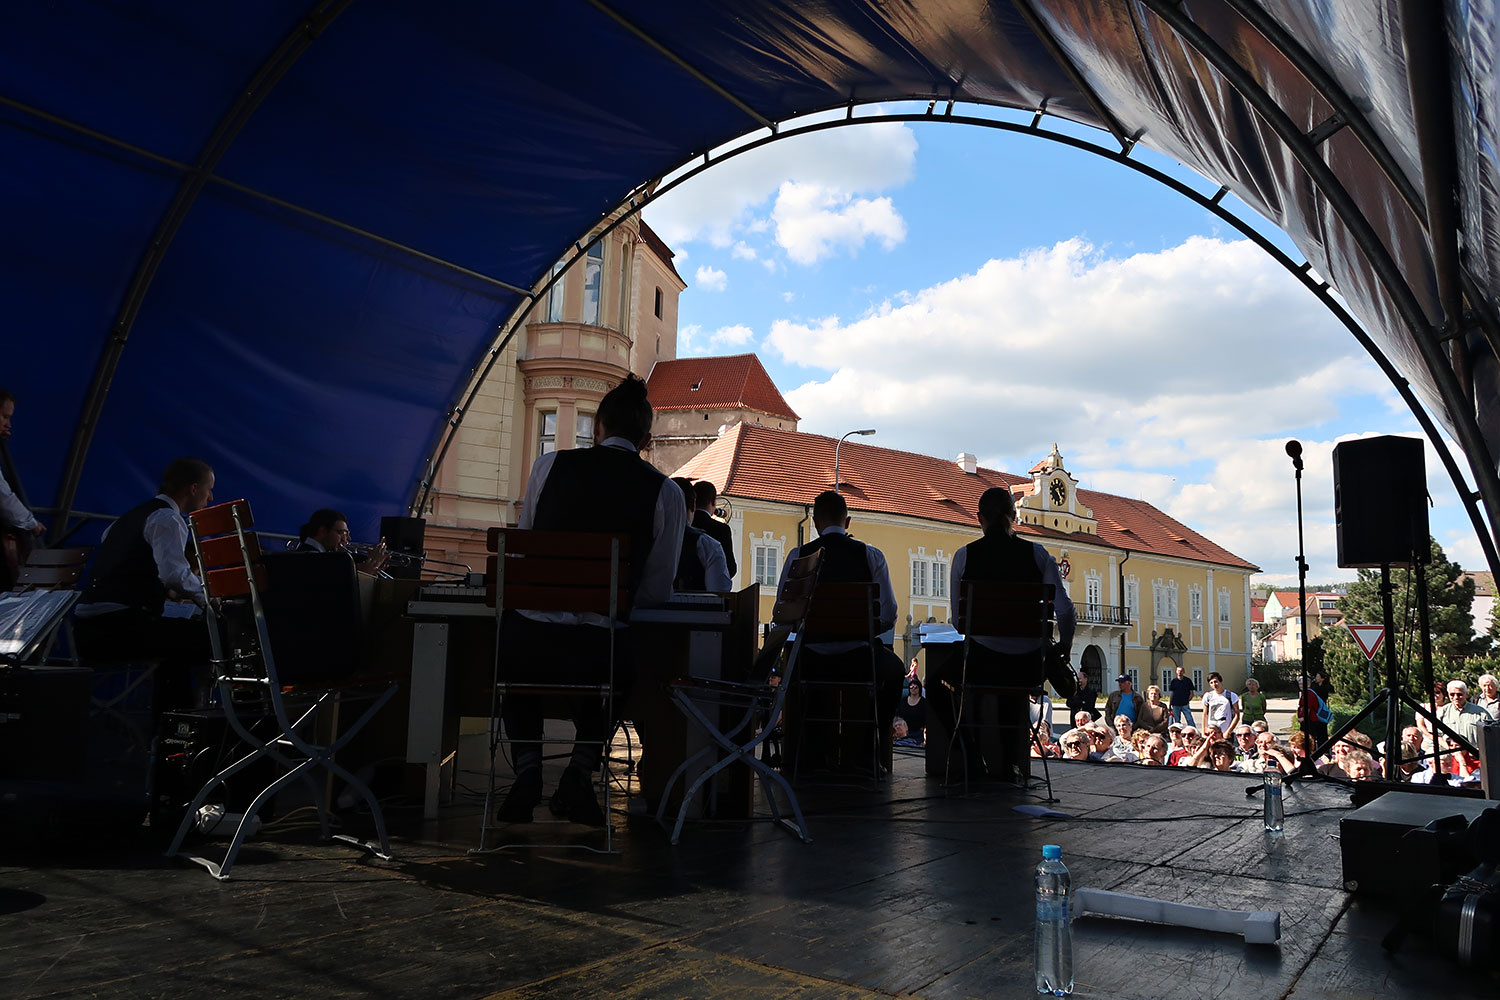 Oslava u pomníku Na Dubovci k 71. výročí osvobození od fašismu – Ježkovy stopy, koncert swingového orchestru s českou válečnou a předválečnou hudbou z období 30. let